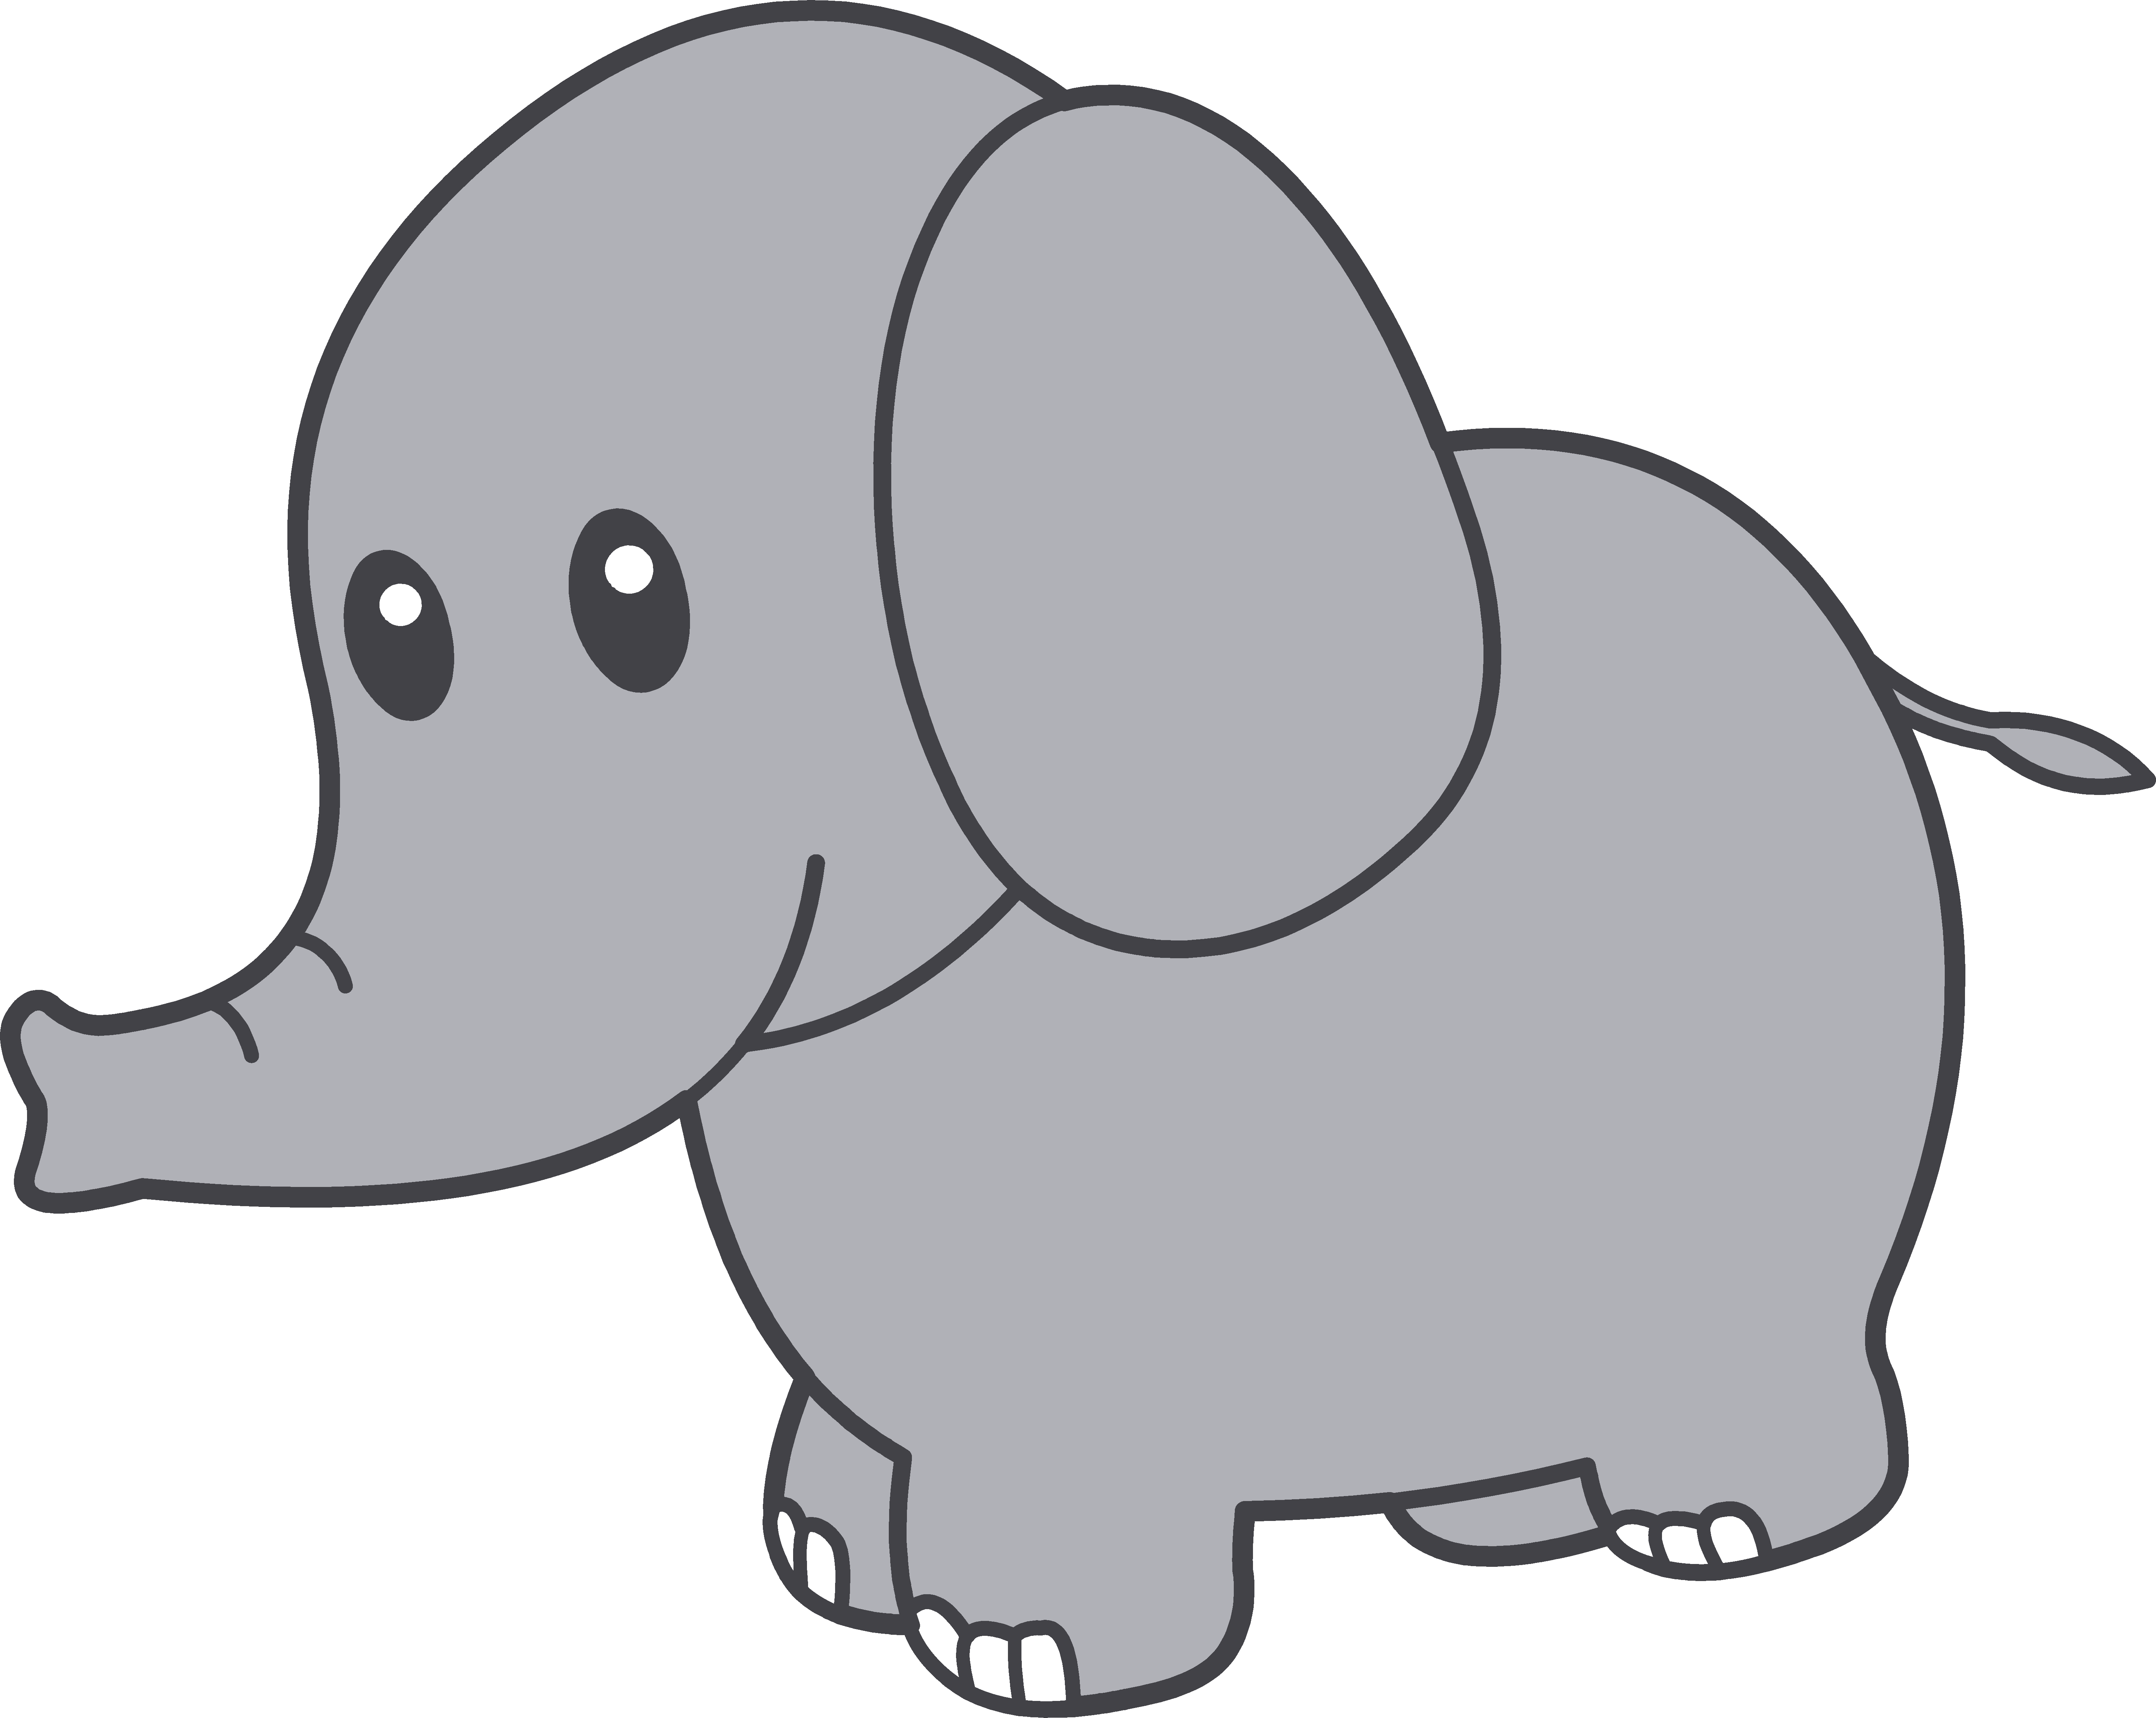 Elephant Clip Art